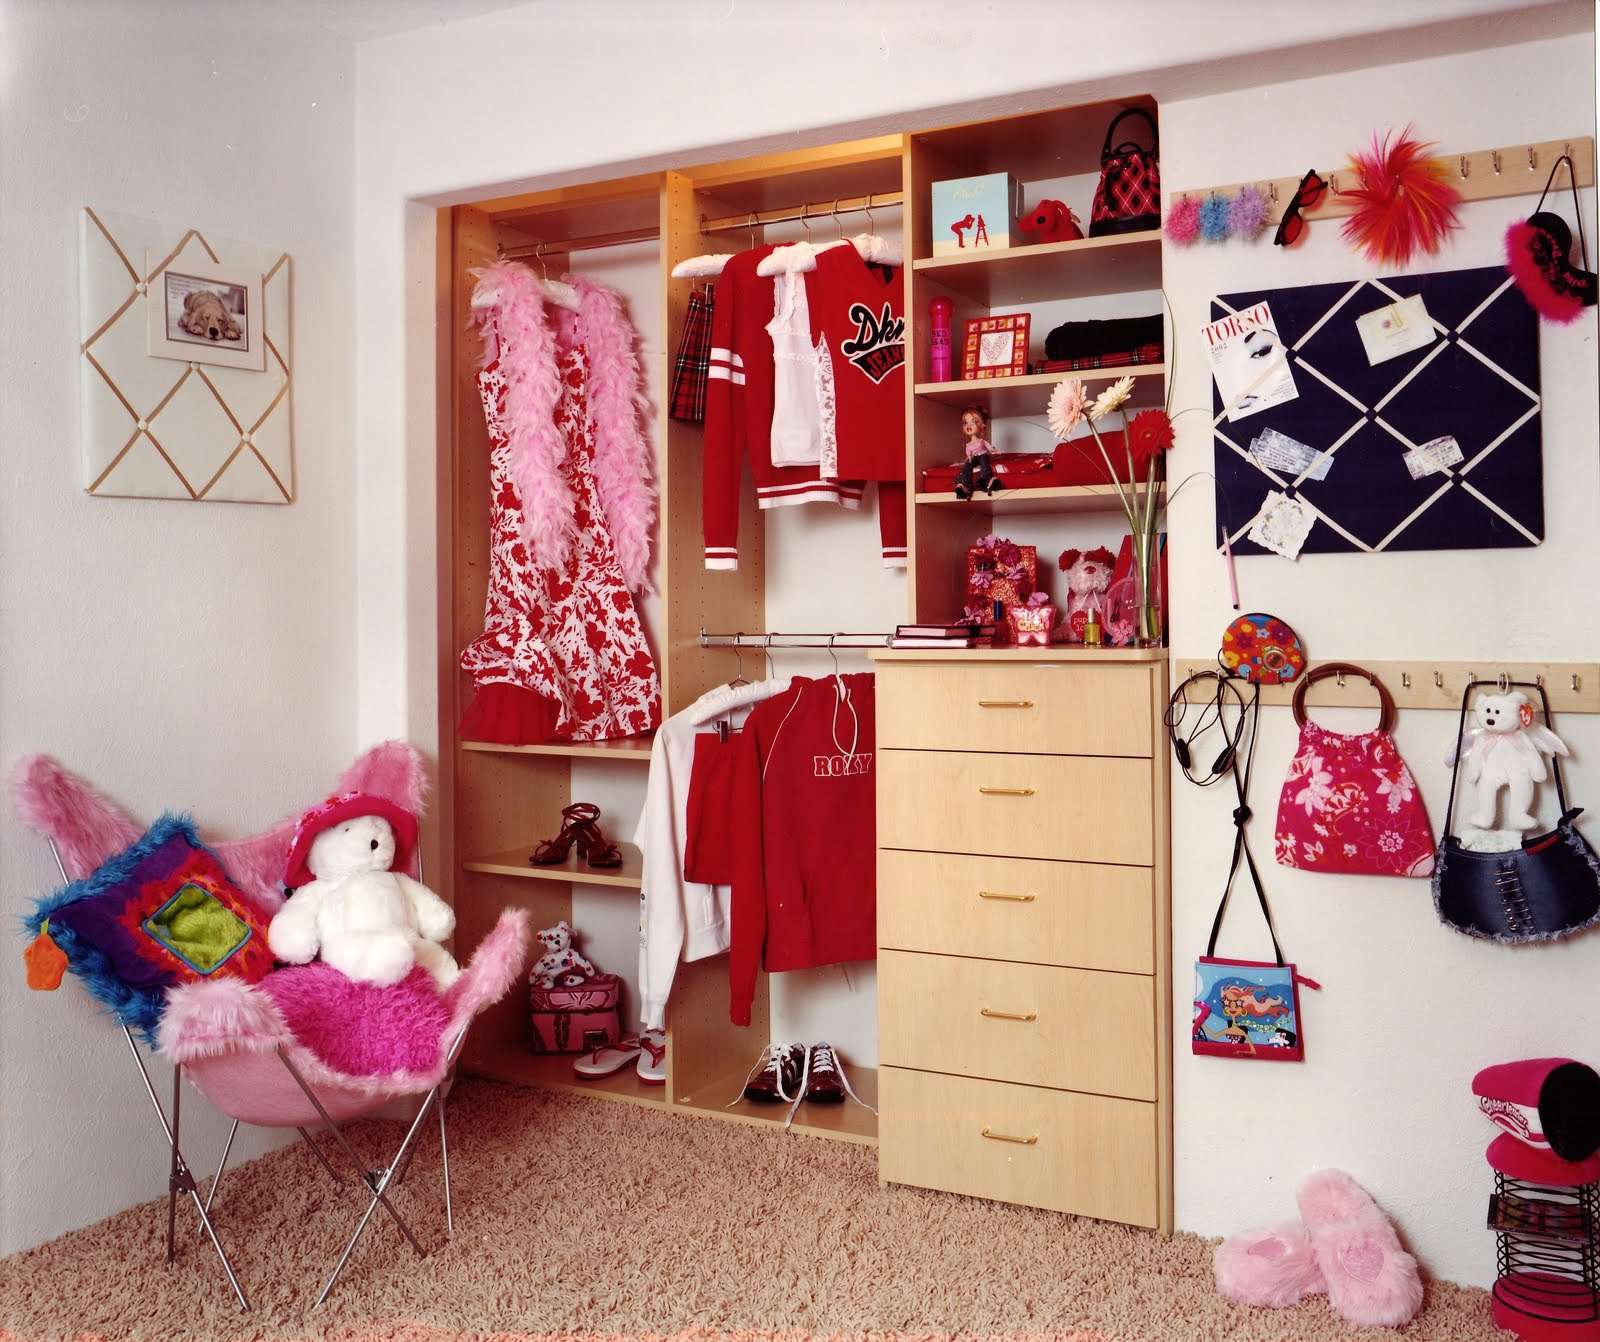 Шкафы в детскую комнату для мальчика